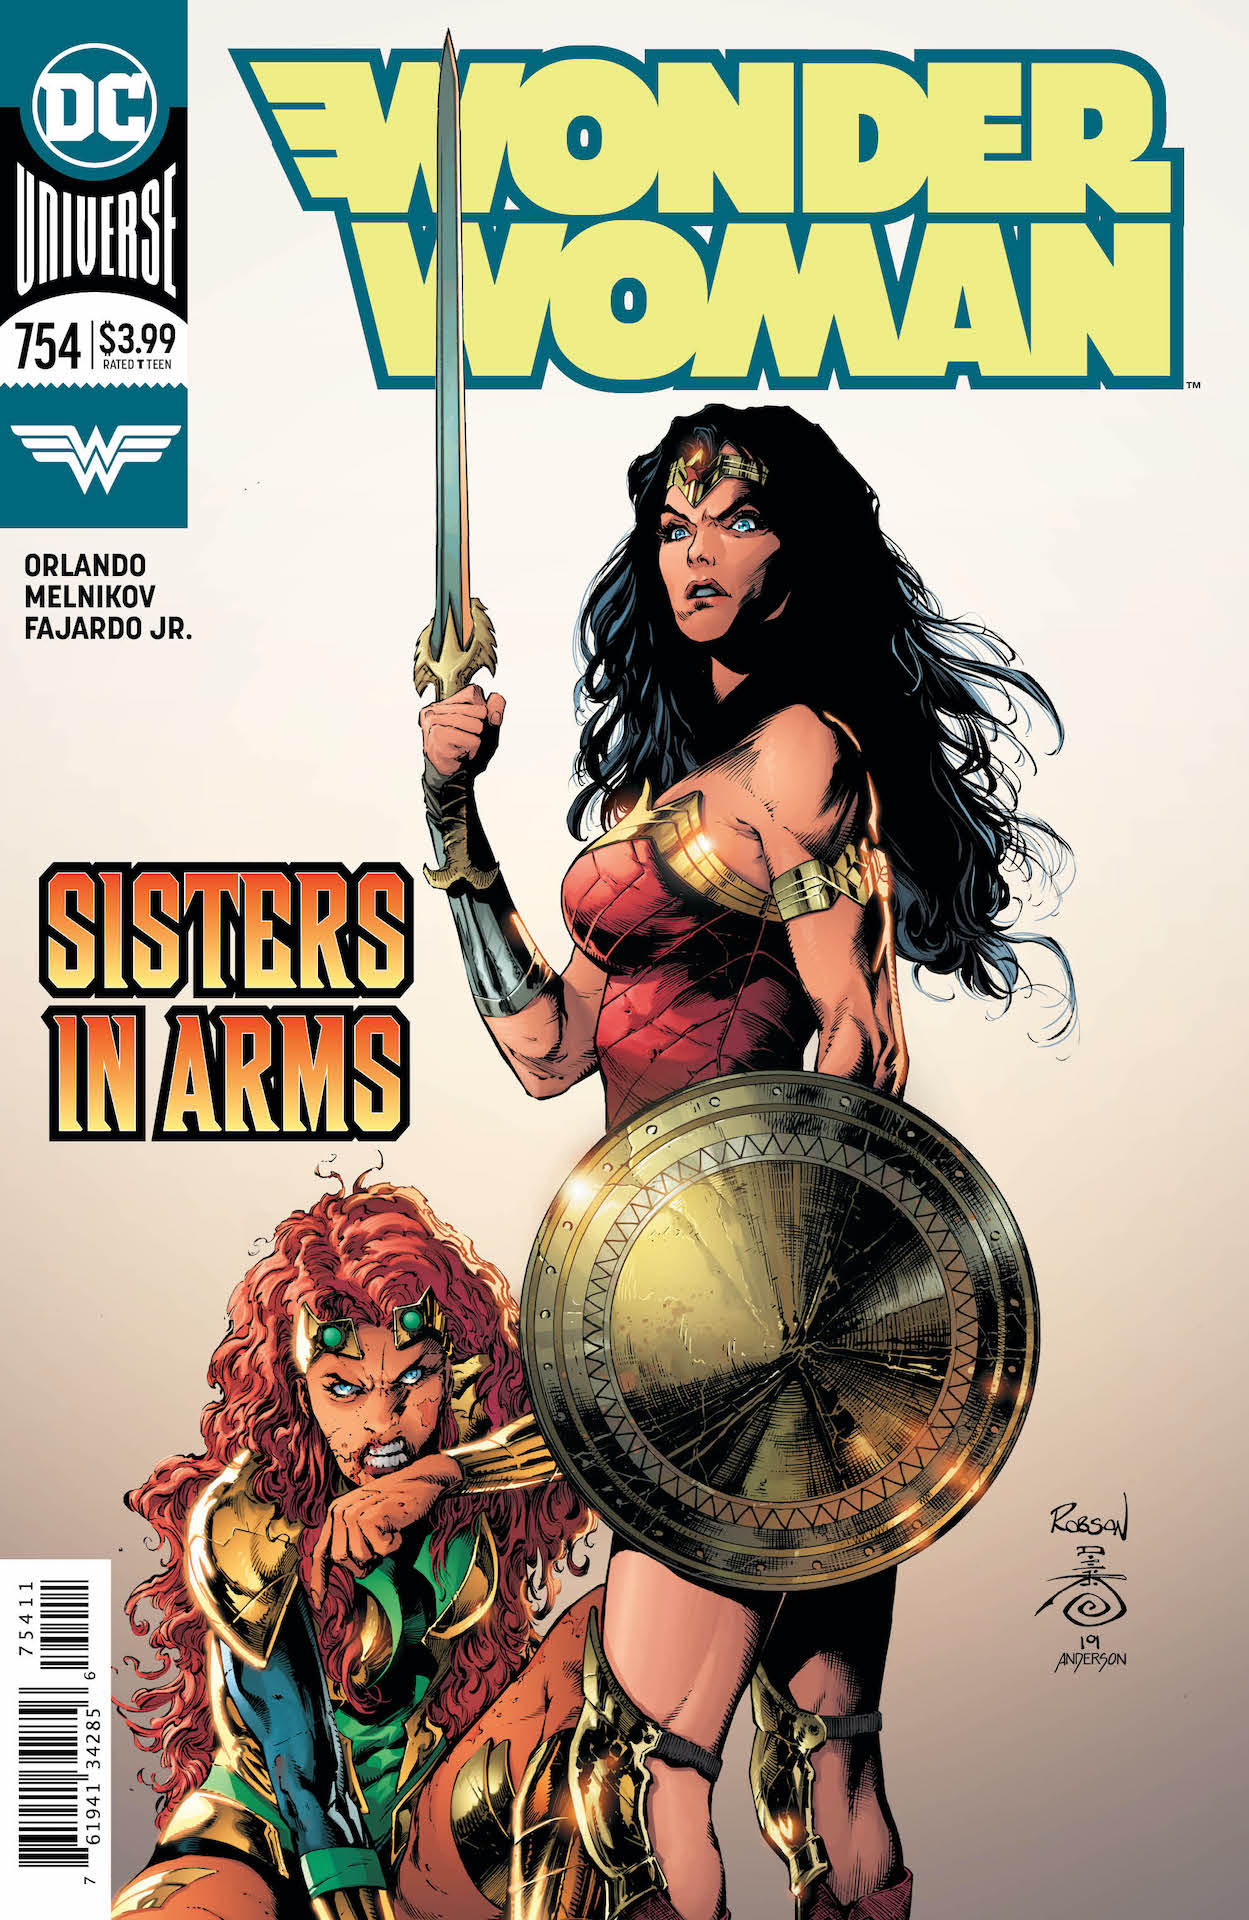 DC Preview: Wonder Woman #754